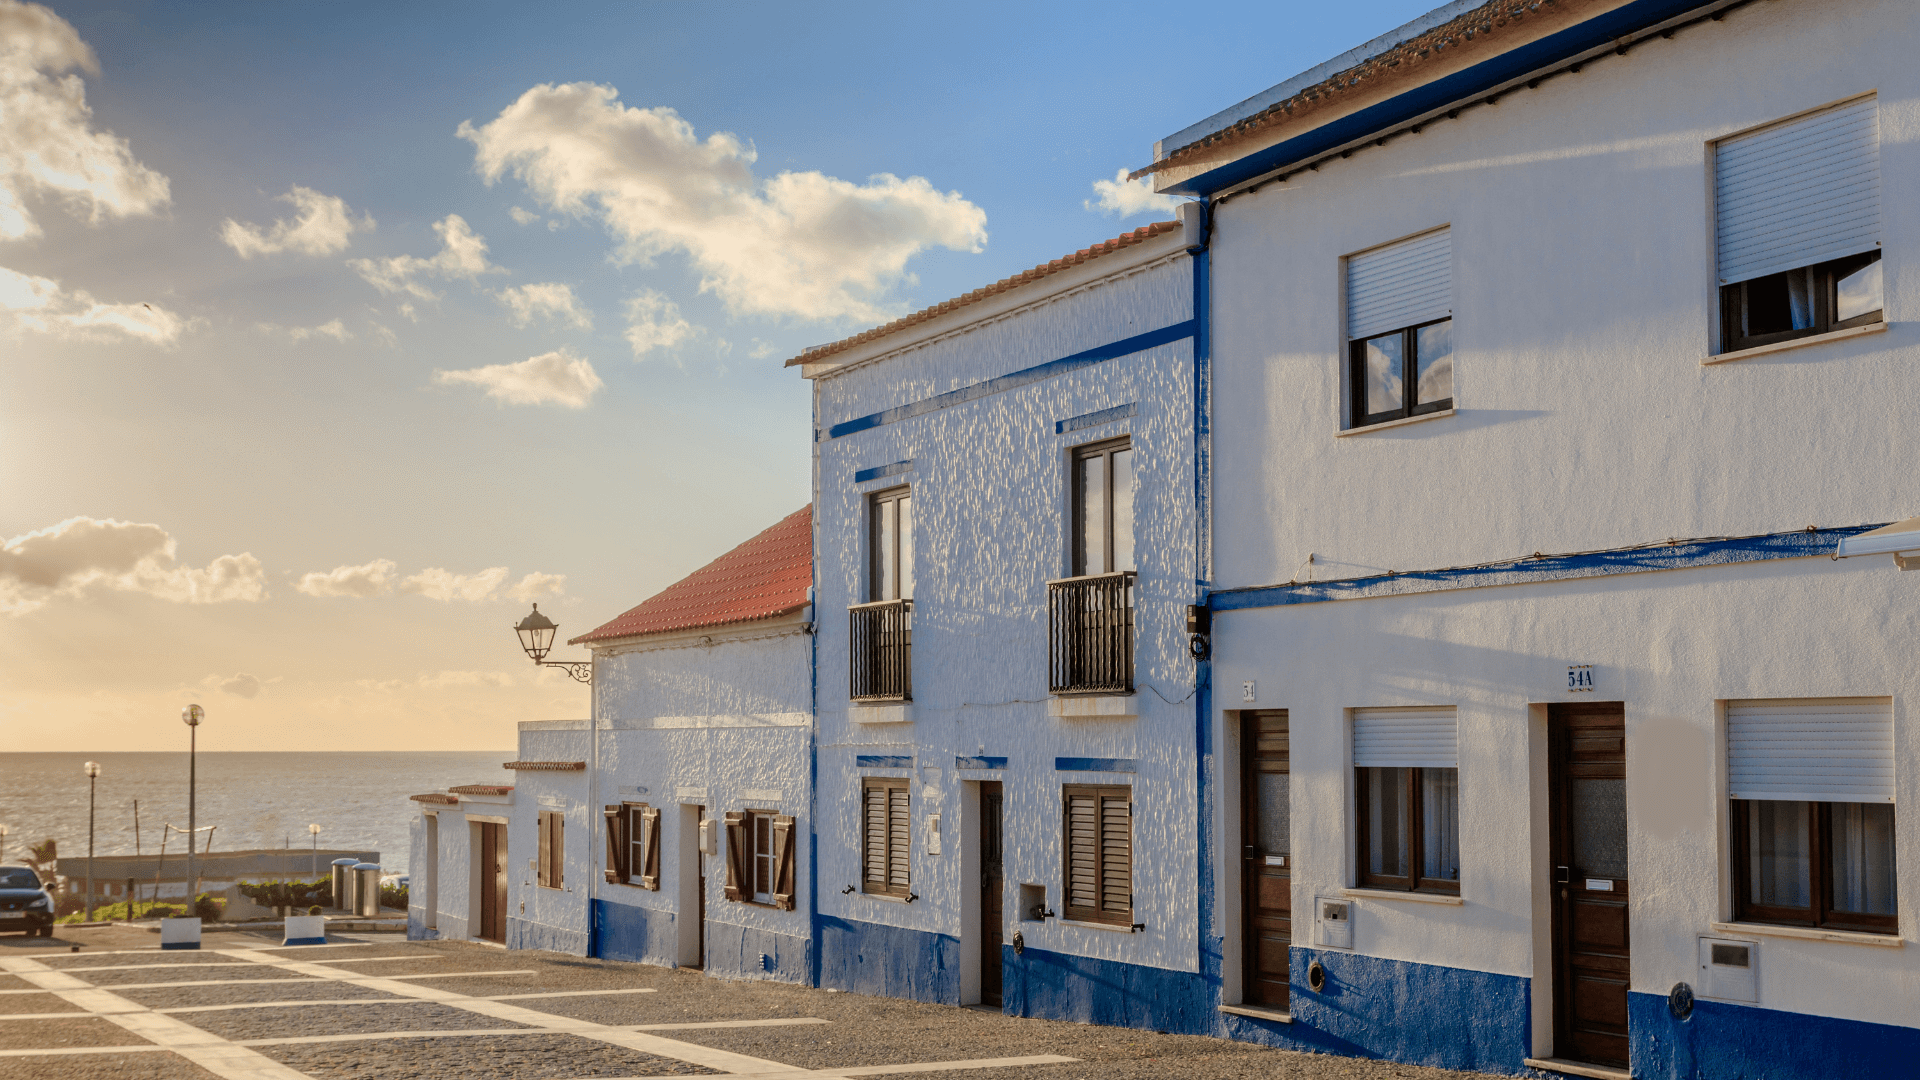 Porto Covo, Portugal